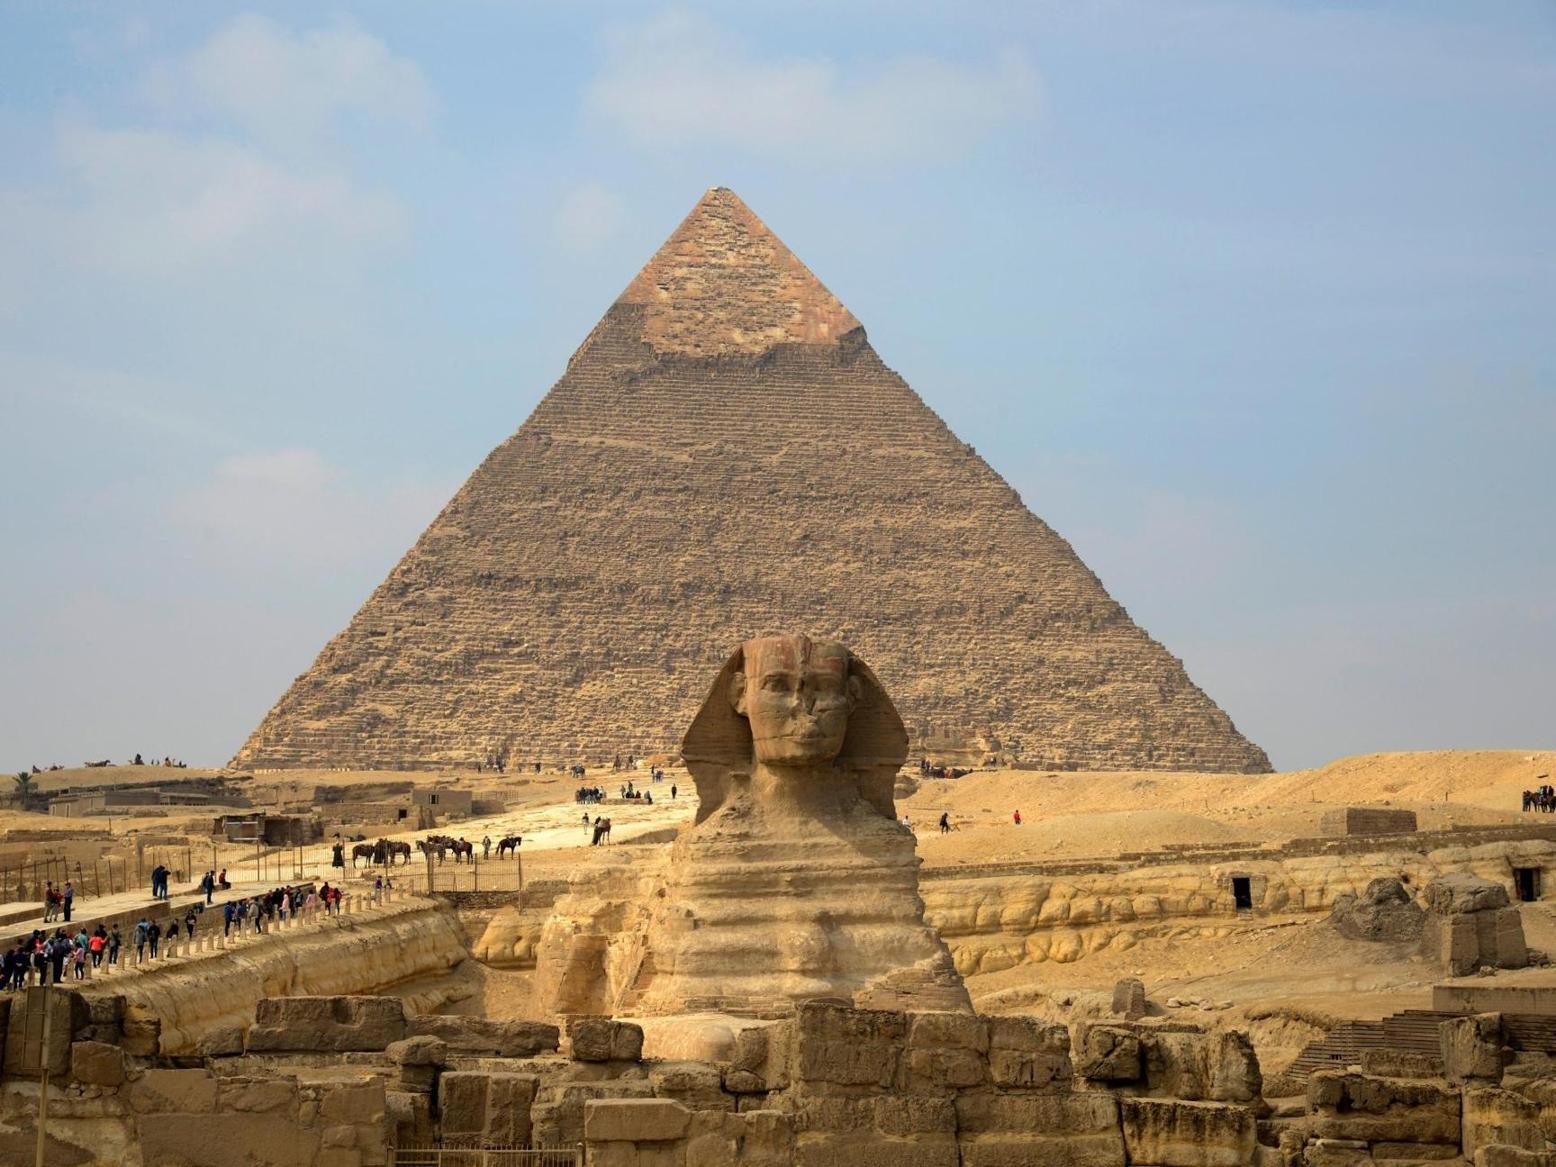 ما حقيقة "الحضارة المفقودة" في مصر؟ وهل يعود تاريخ إنشاء أبو الهول إلى ما قبل الفراعنة؟